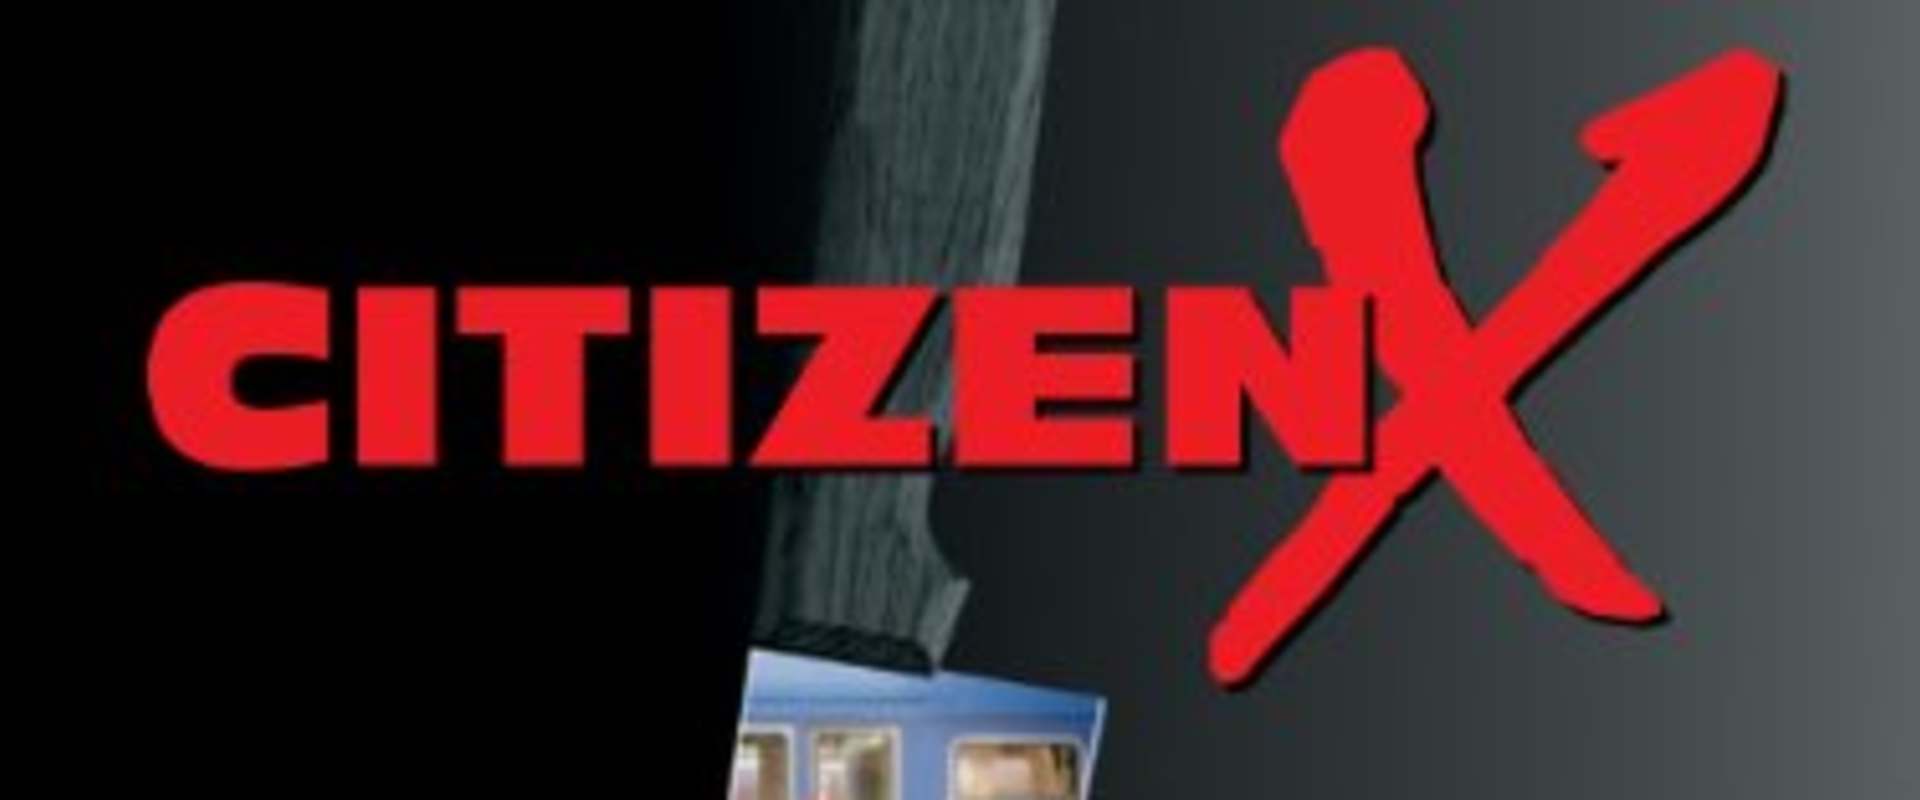 Citizen X background 1